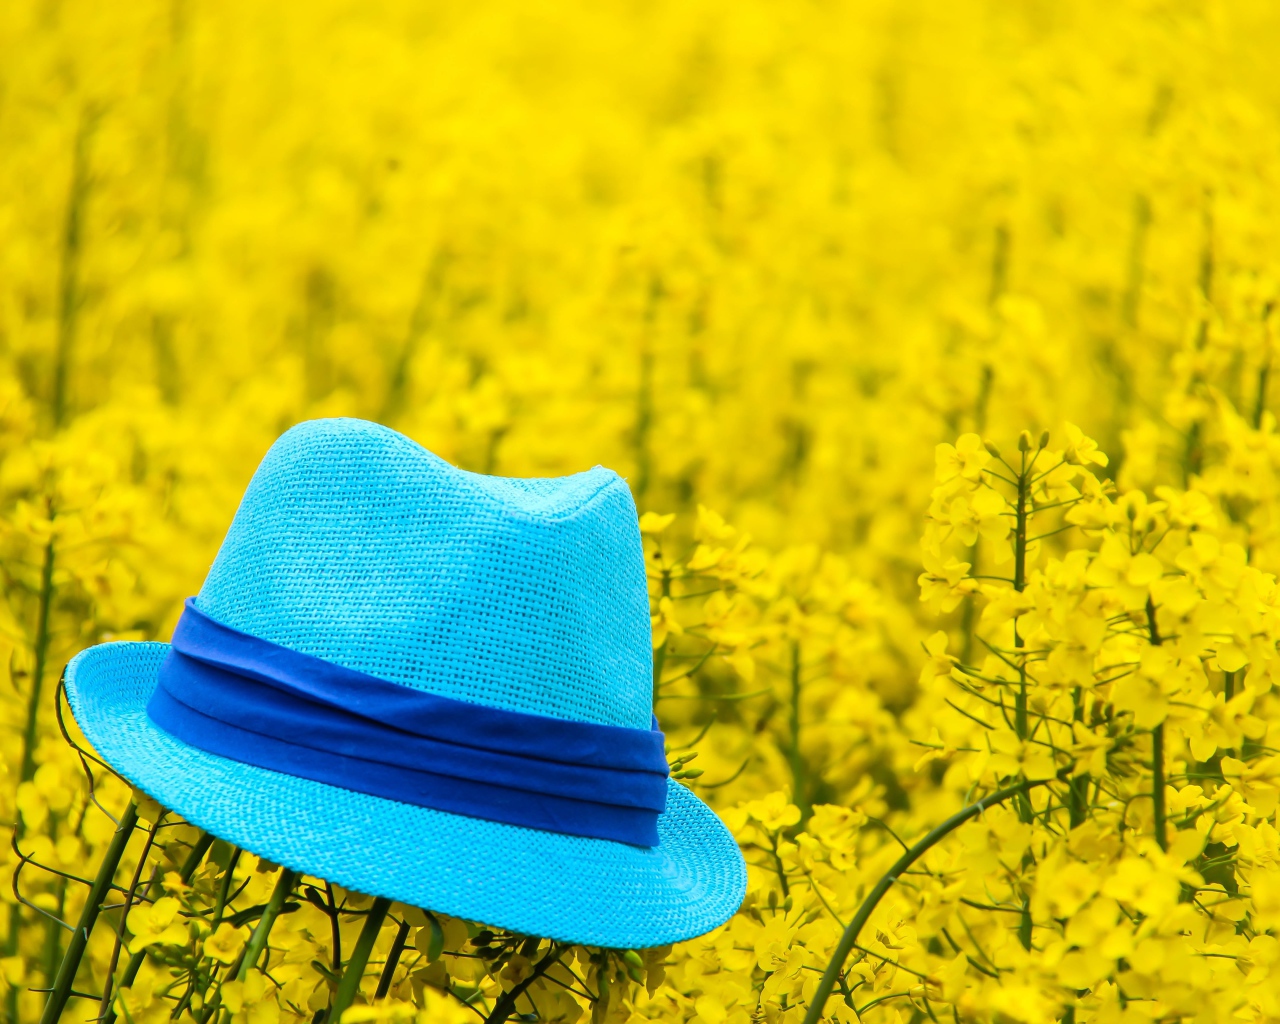 Голубая шляпа лежит на желтых цветах 